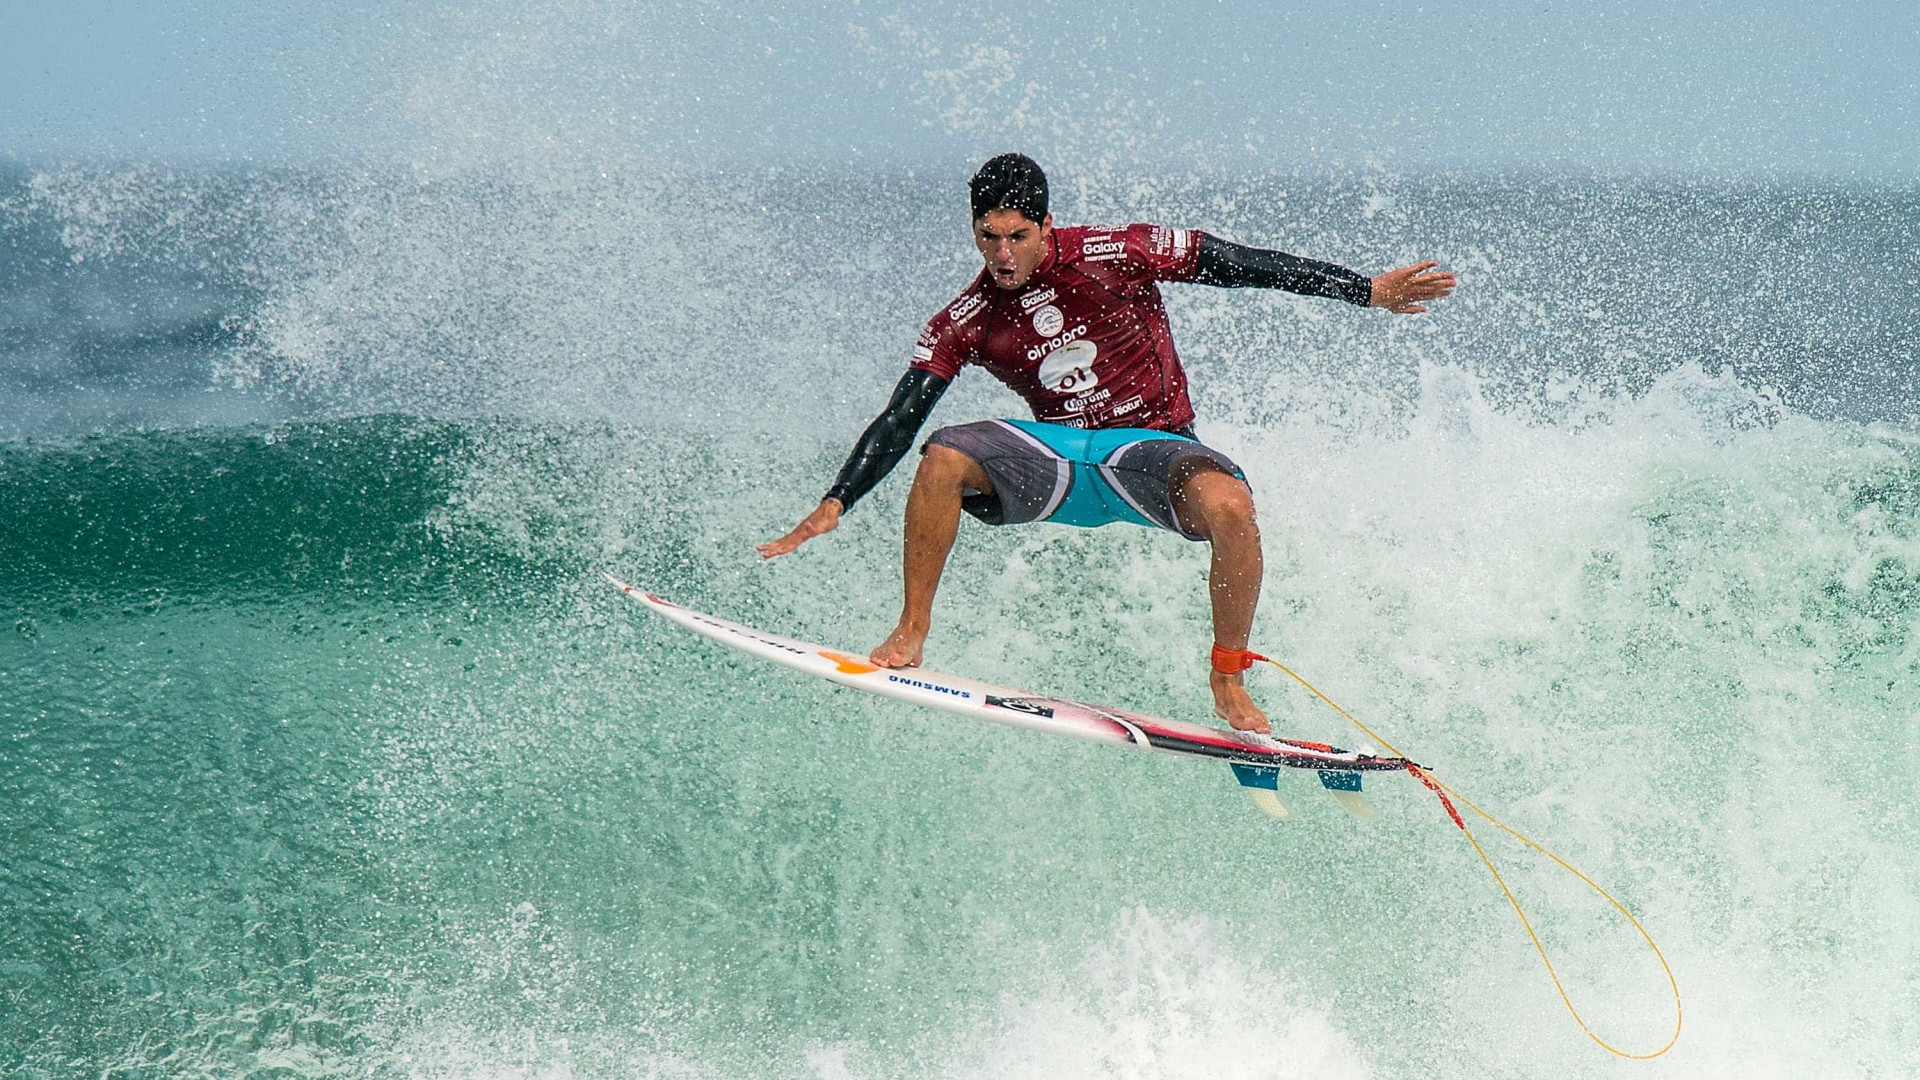 Título do Mundial de Surfe de 2017 pode ser decidido já em Portugal